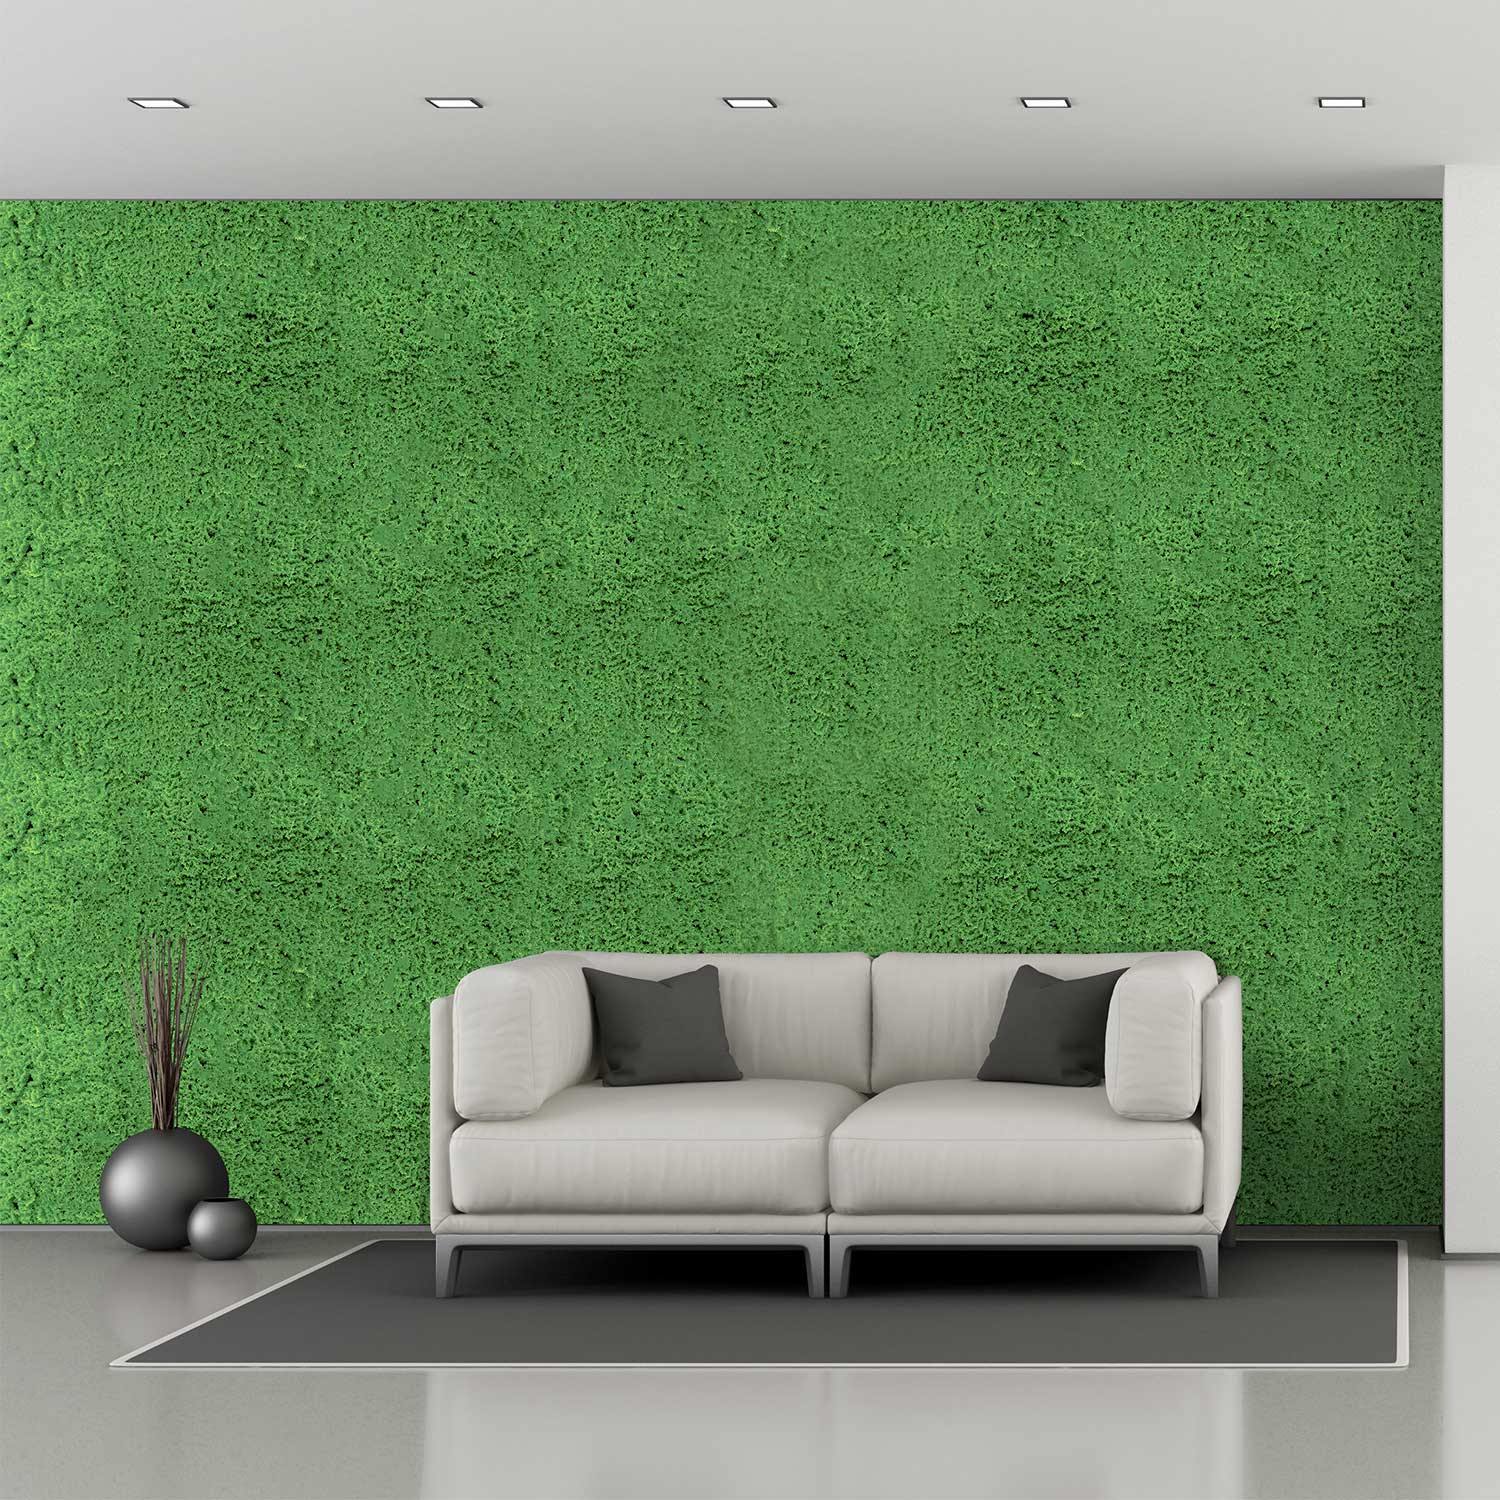 Artificial Evergreen Moss Mat Panels - Natrahedge